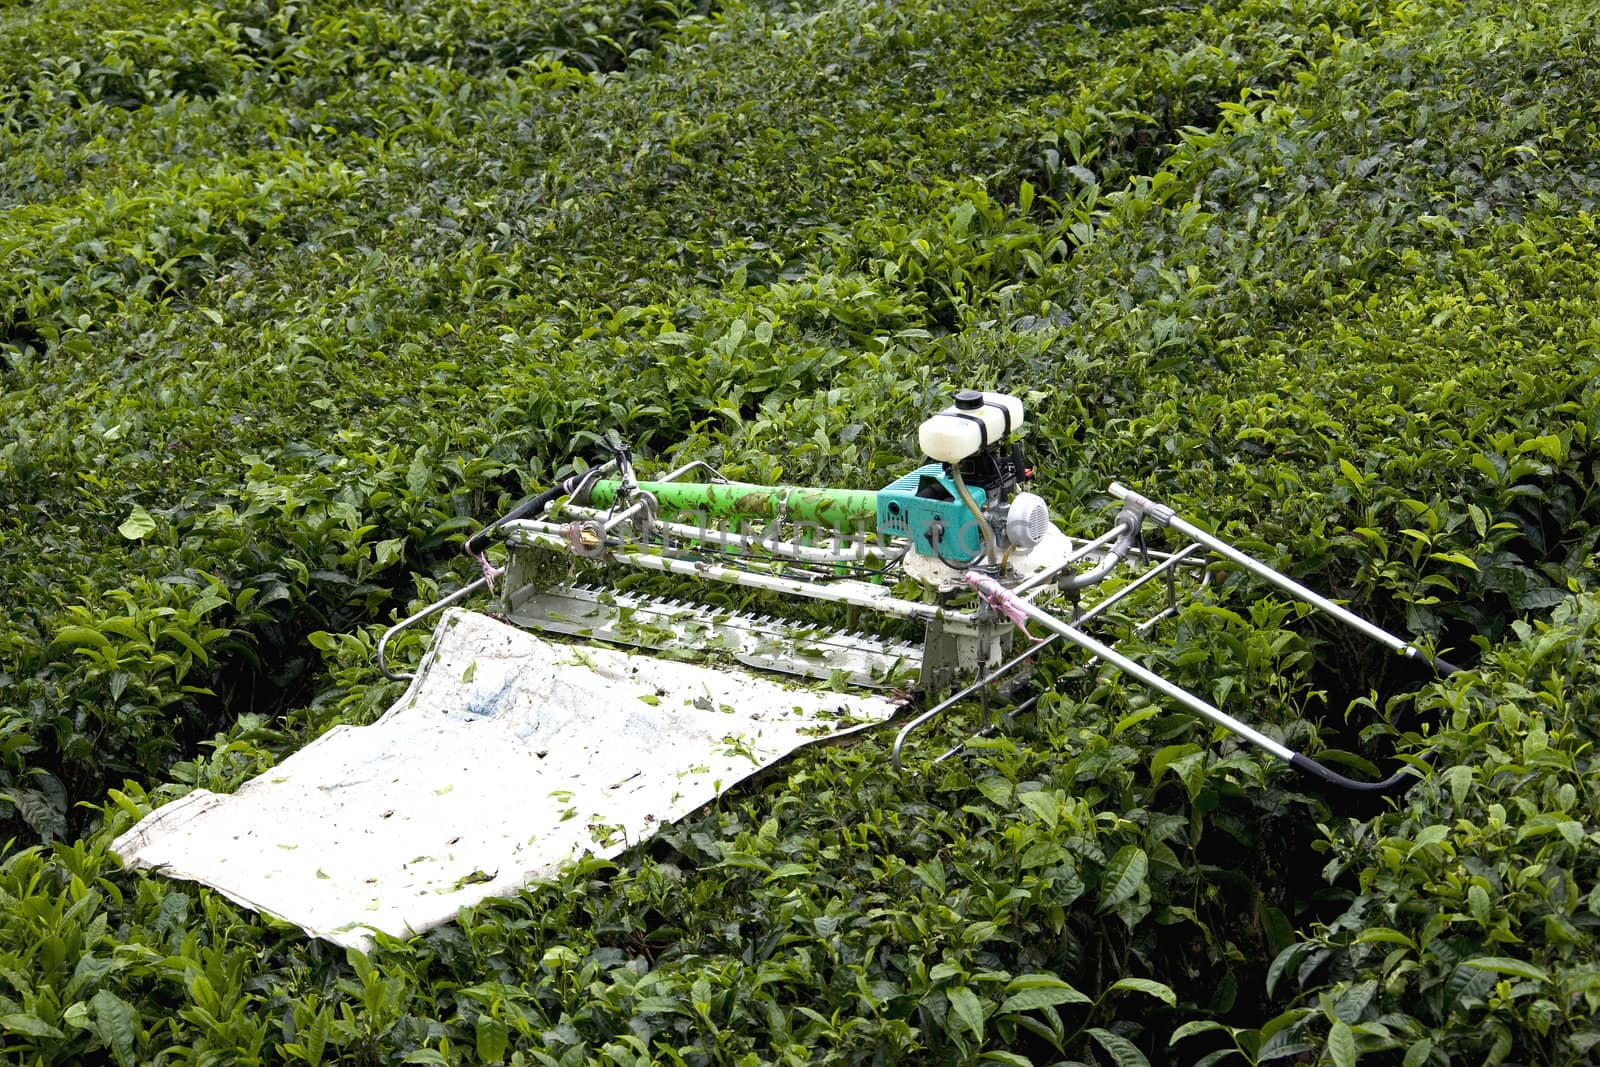 Image of a mechanised tea leaf harvester at a plantation.